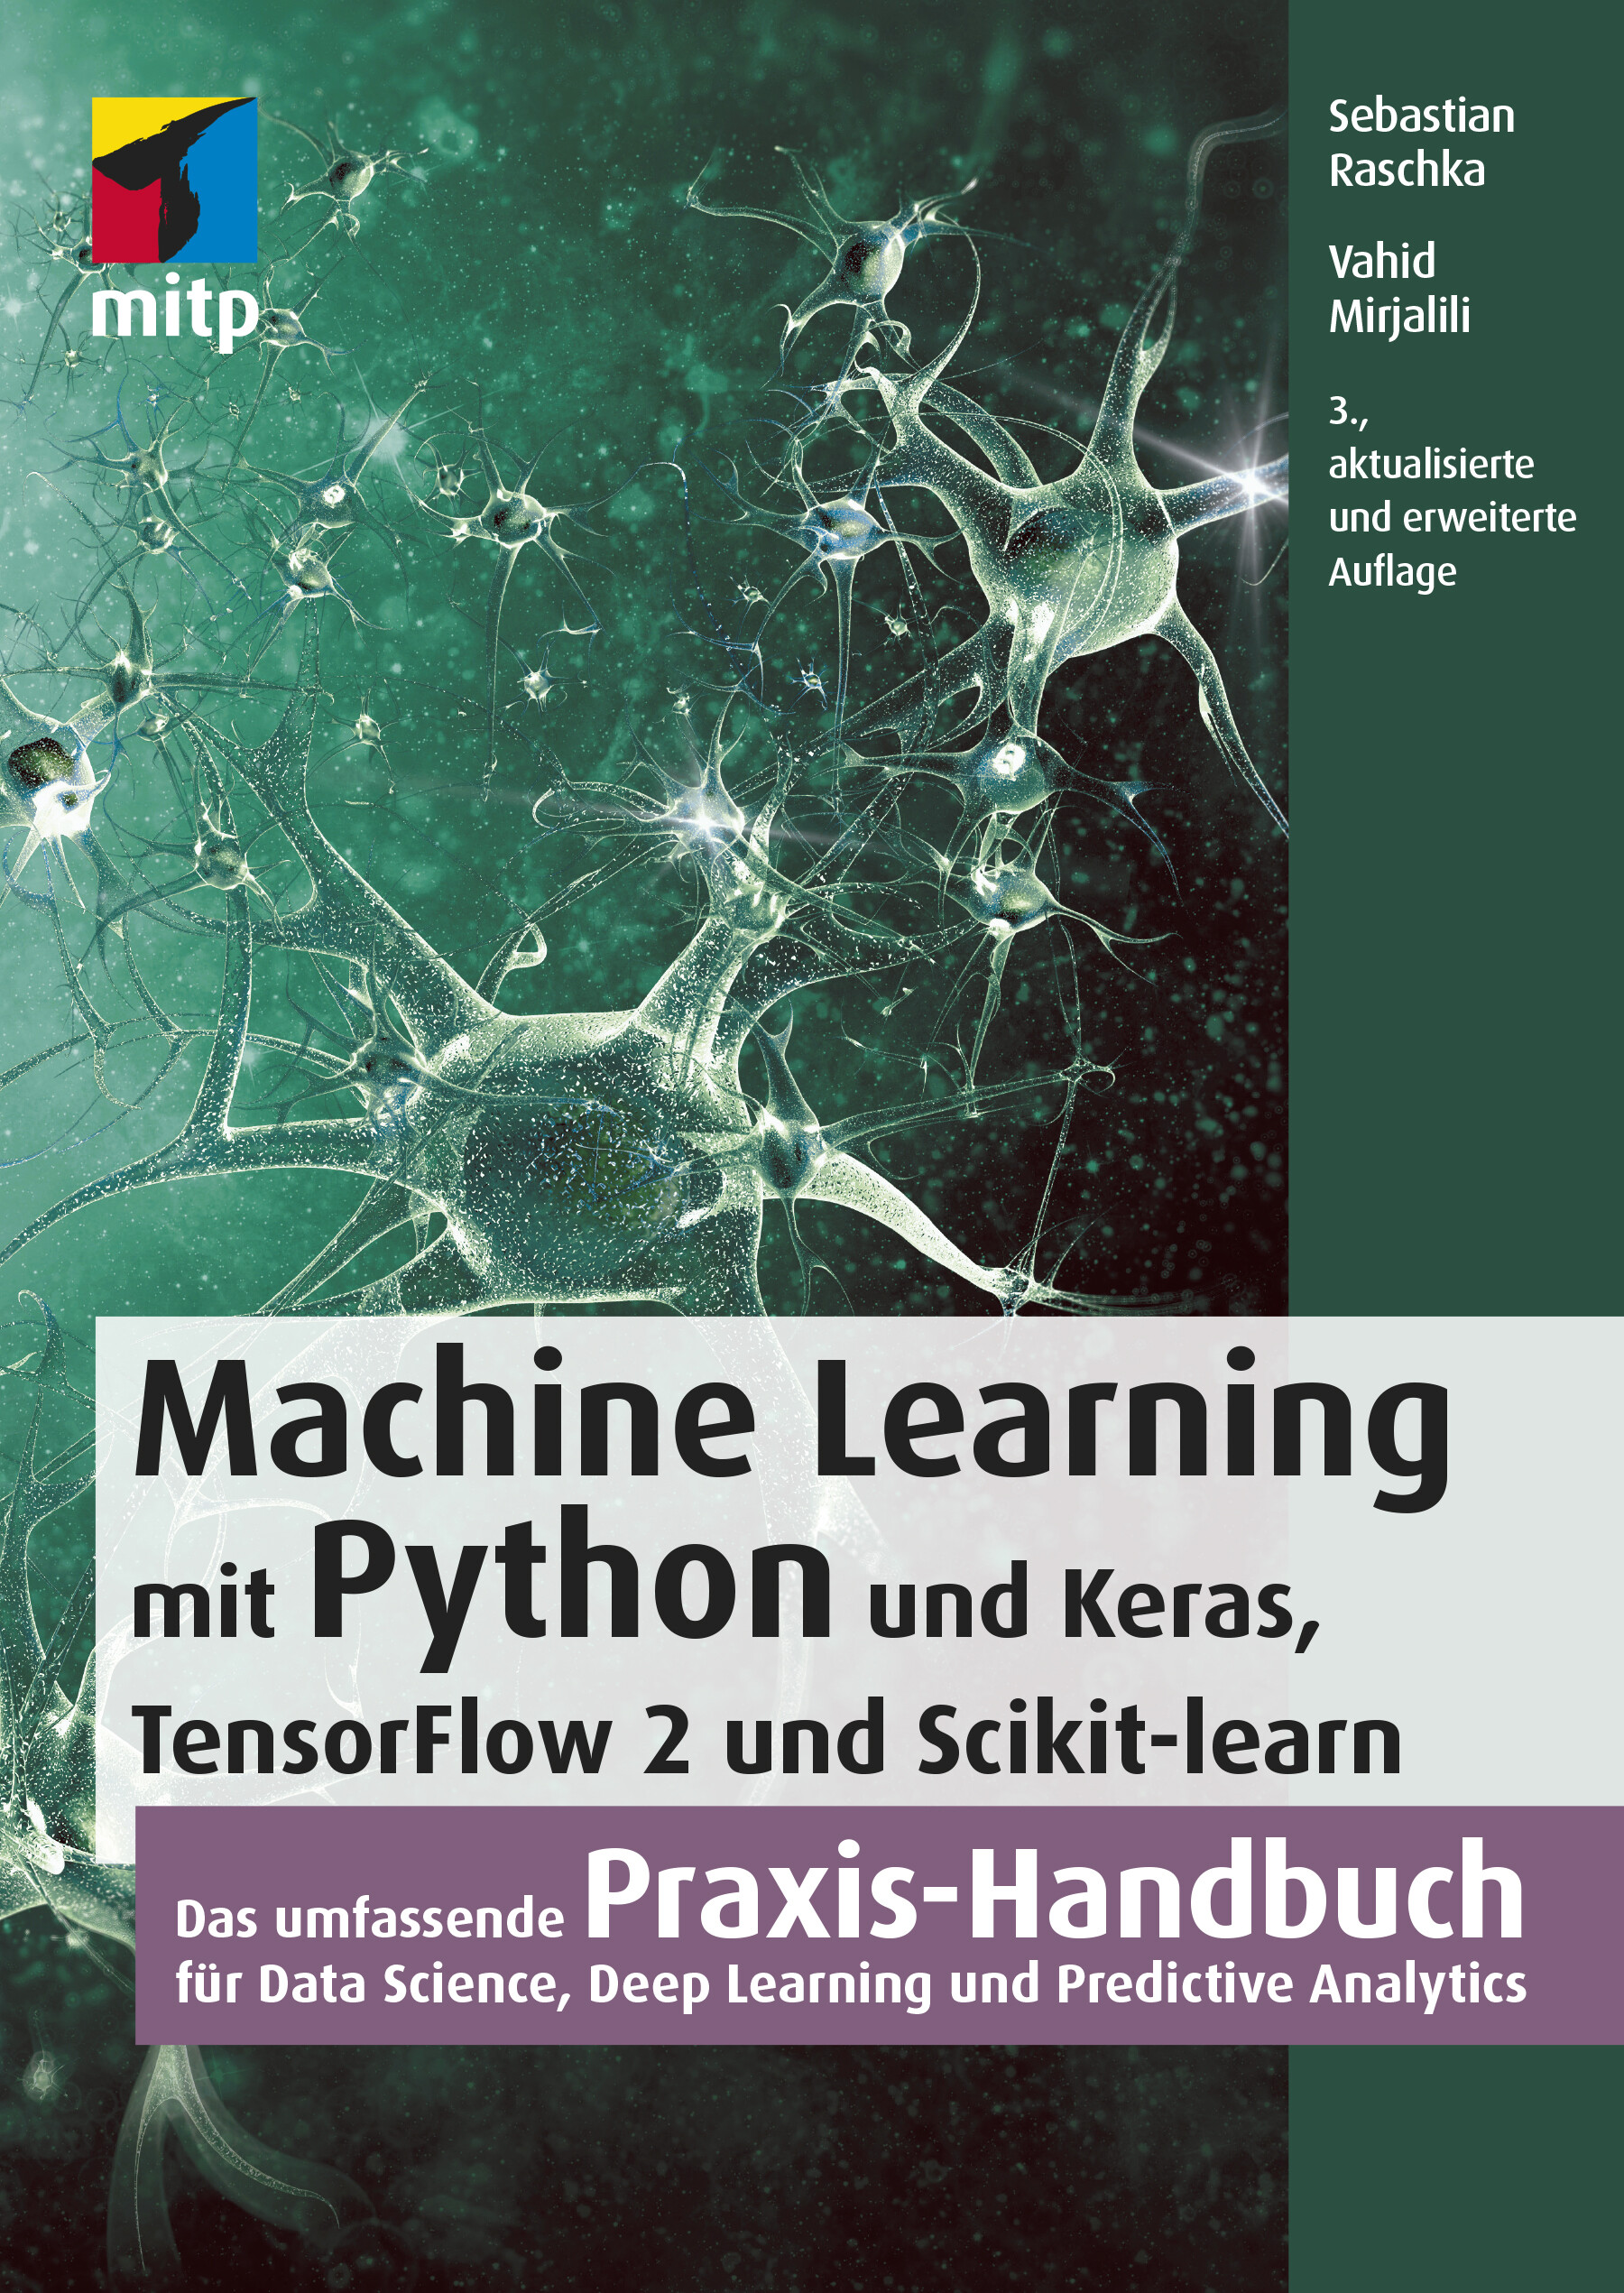 Machine Learning mit Python (3. Auflg.)